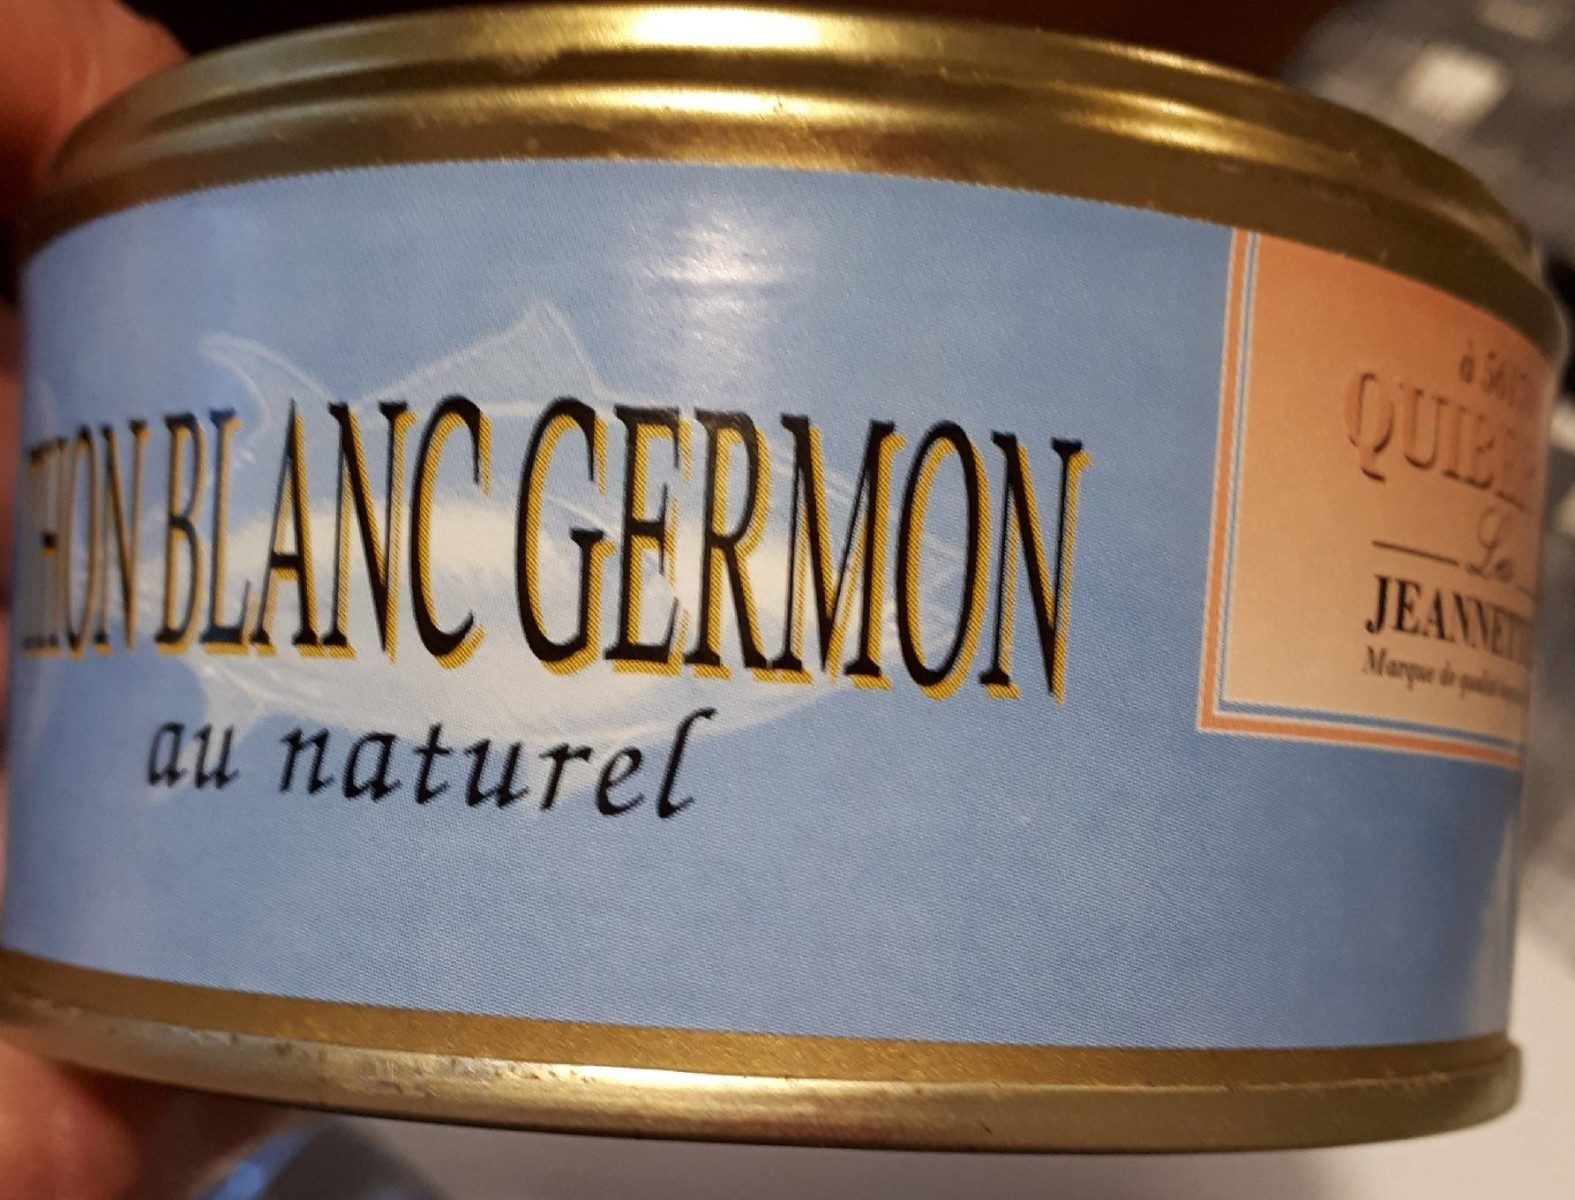 Thon blanc germon au naturel - Produit